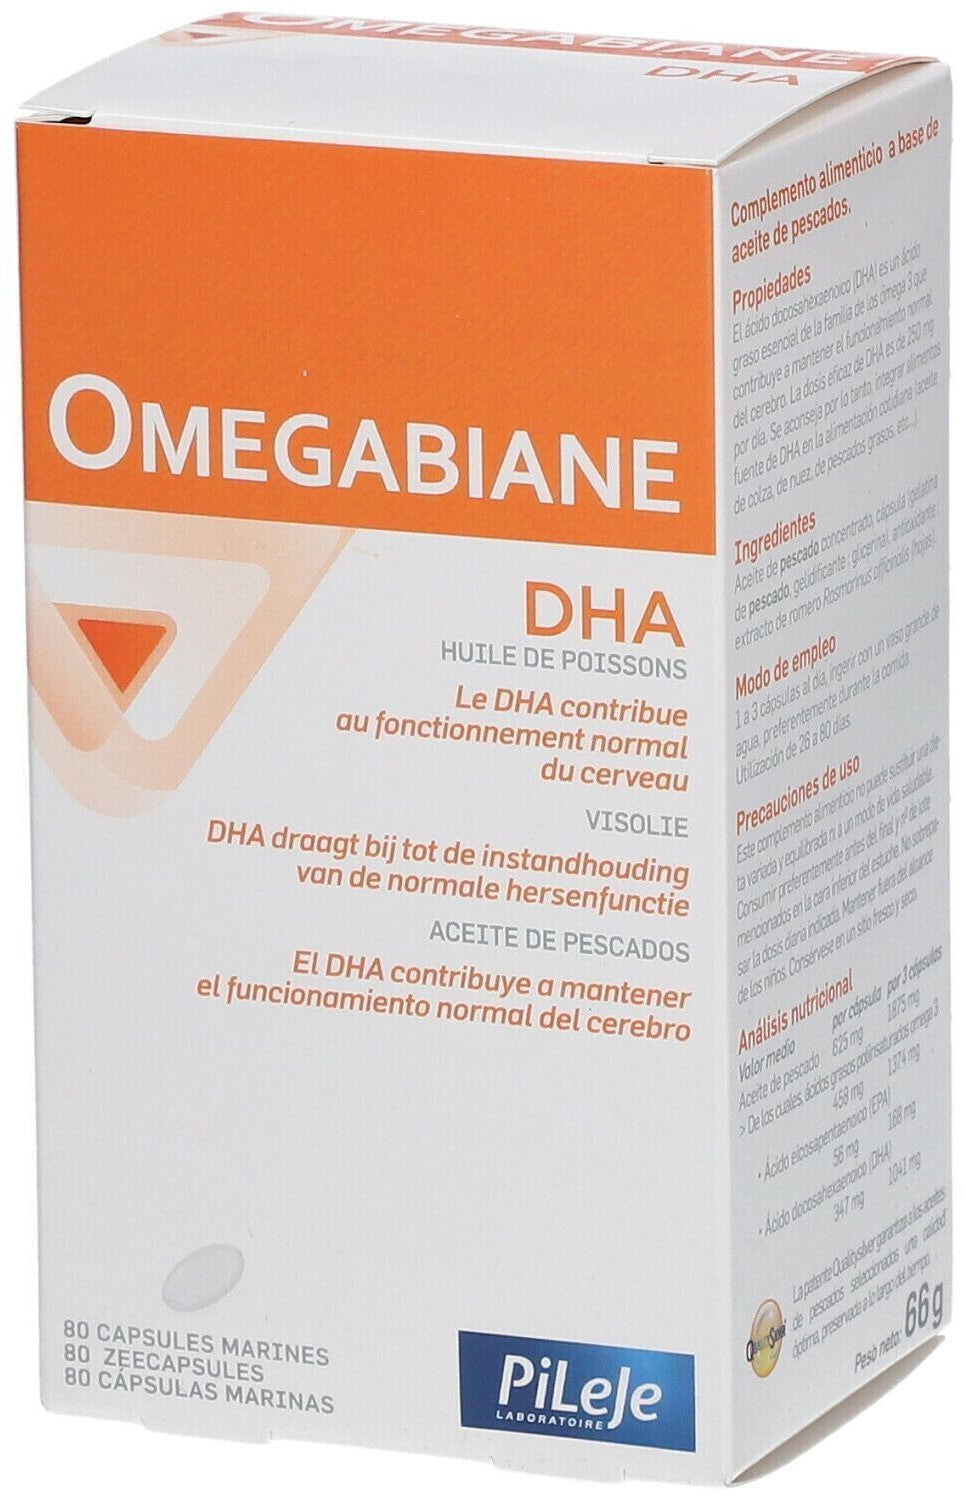 Omegabiane